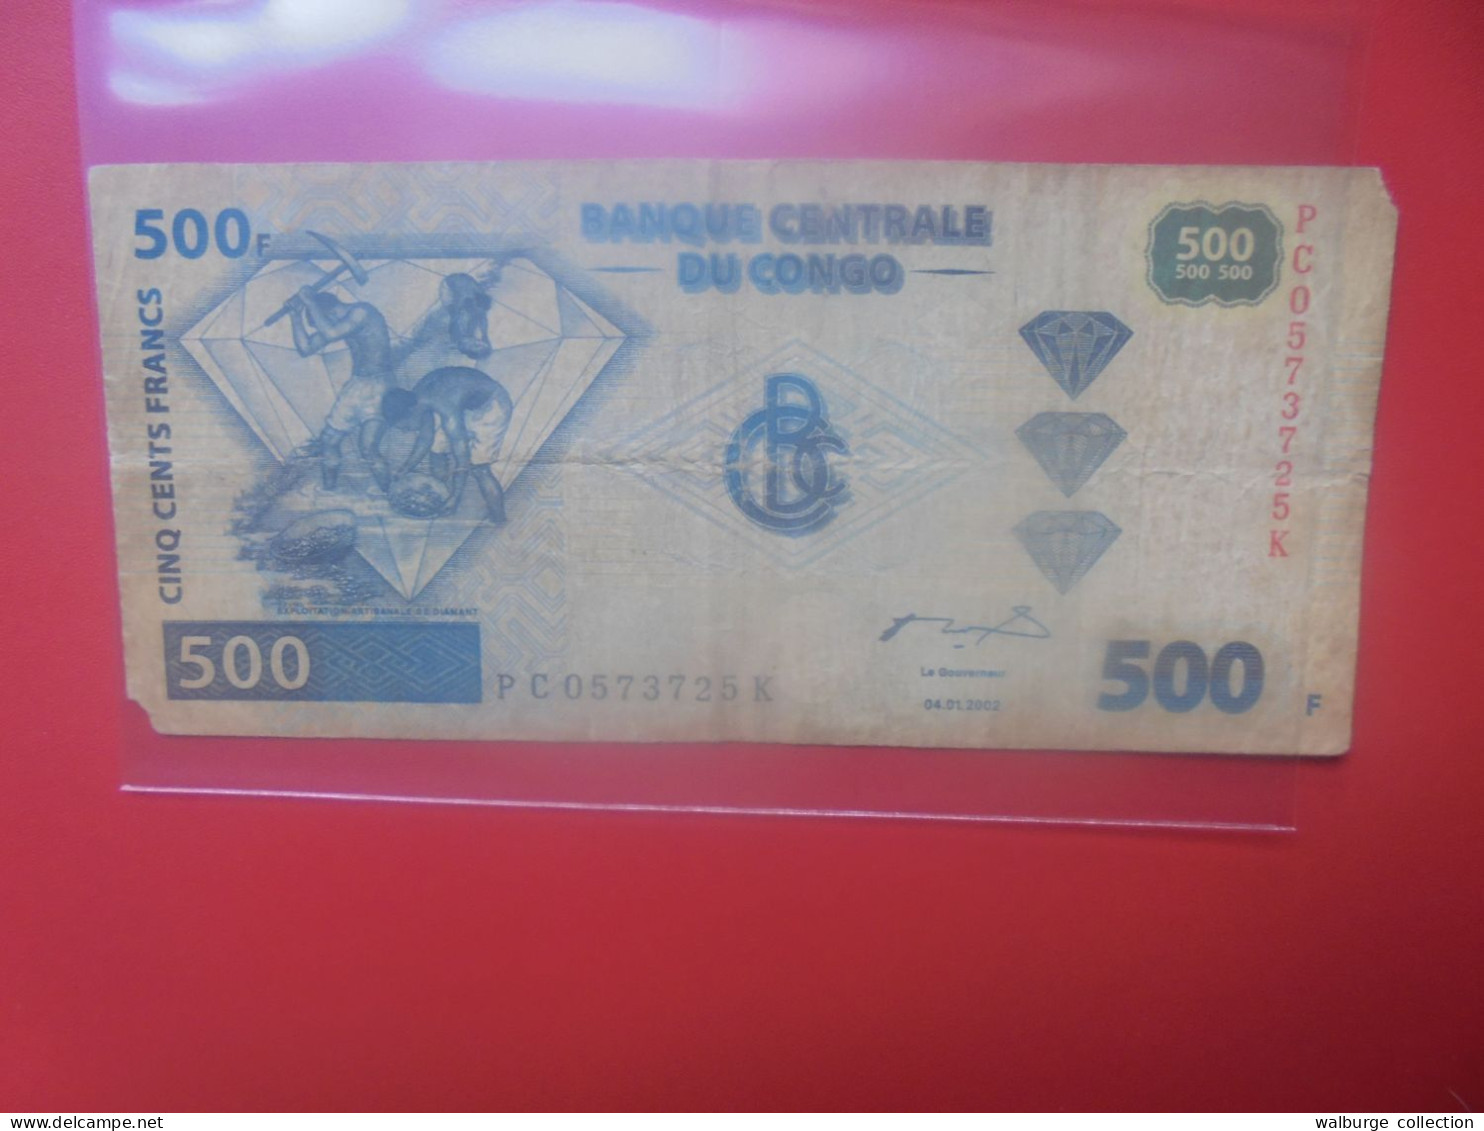 CONGO 500 FRANCS 2002 Circuler (B.33) - Democratische Republiek Congo & Zaire